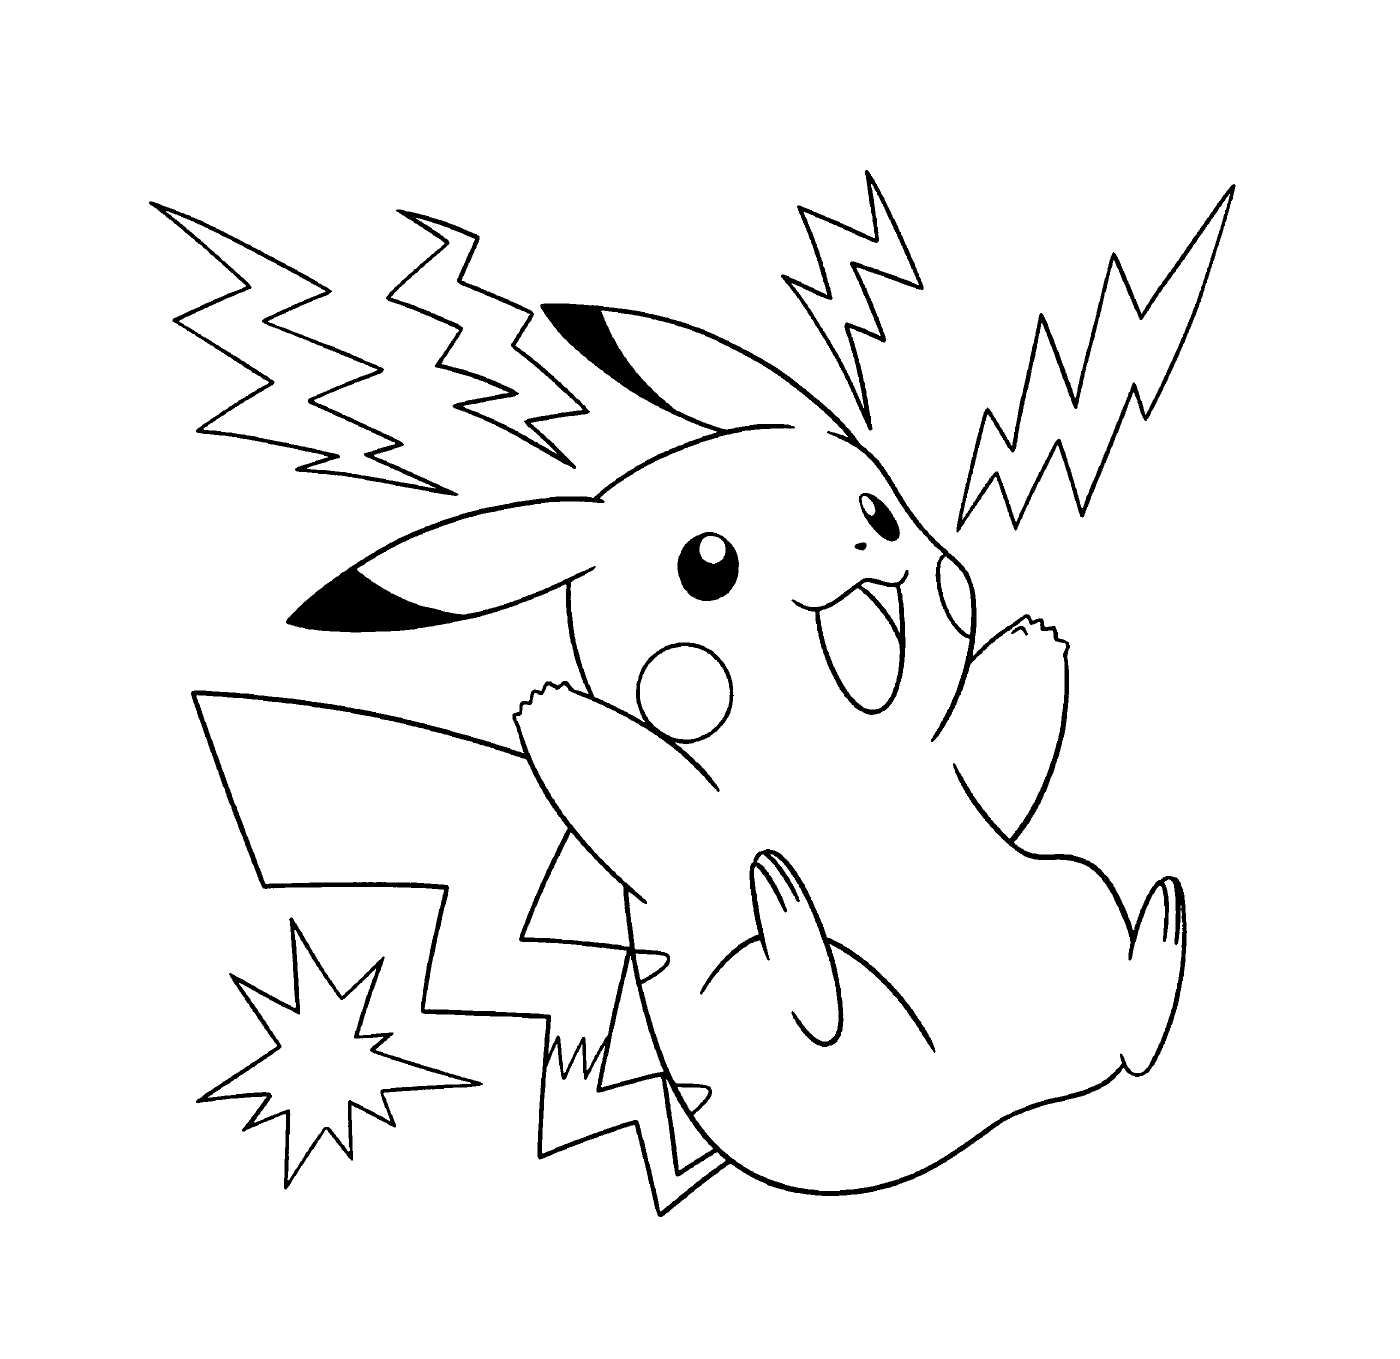  Pikachu, elettrico ed energetico 